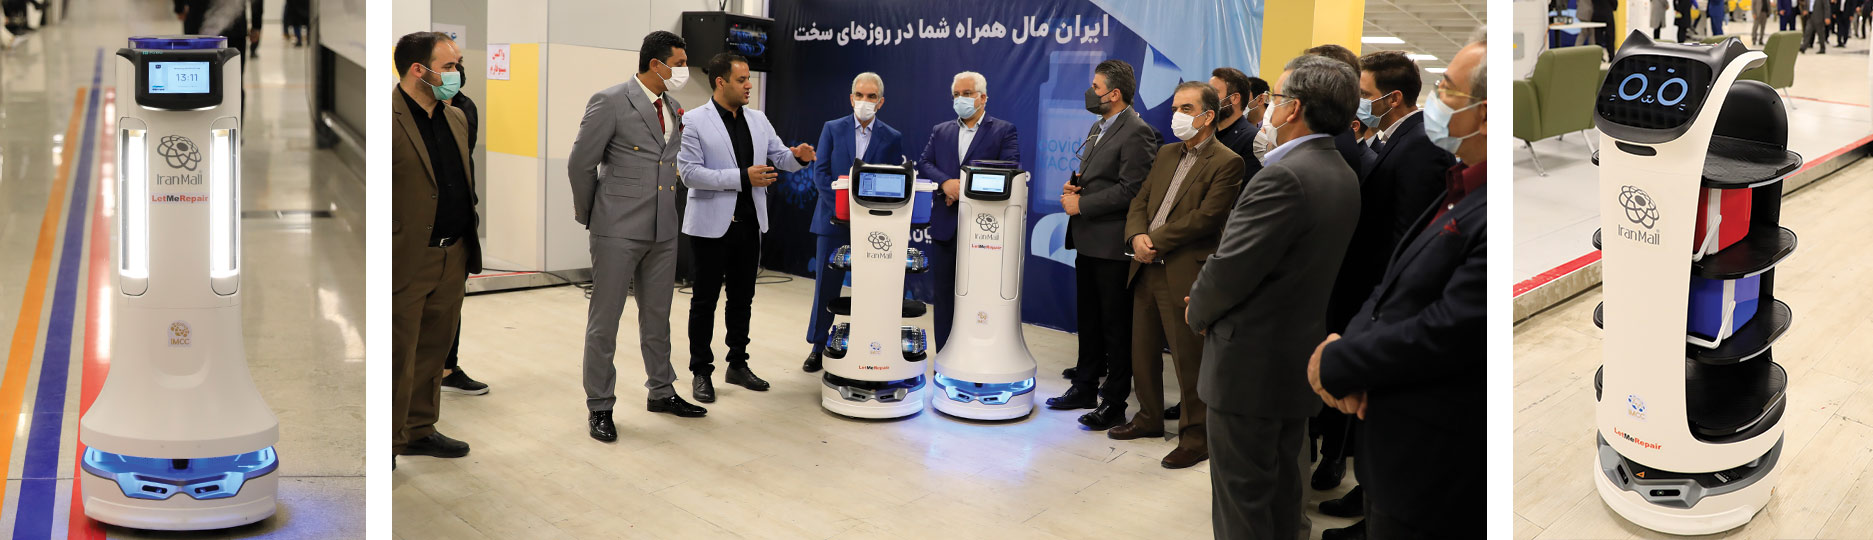 Dévoilement de robots dans le département de vaccination du parc des expositions d'Iran Mall